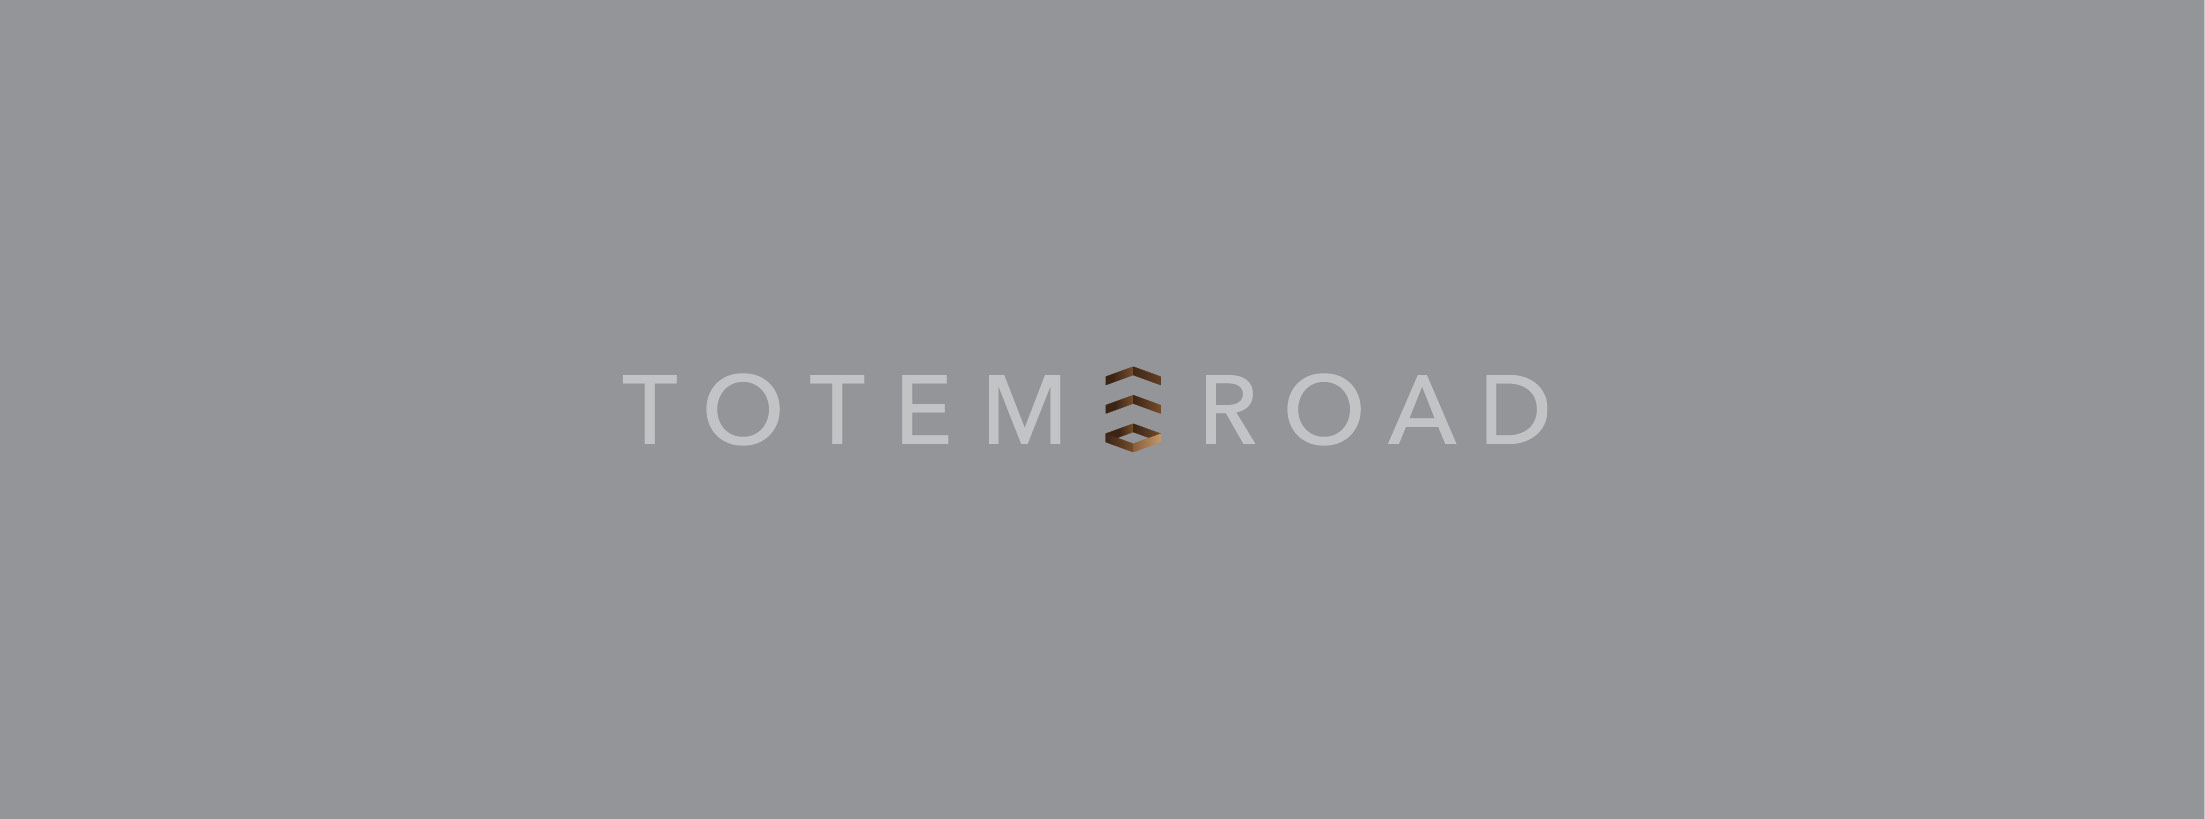 Totem Road Branding Package